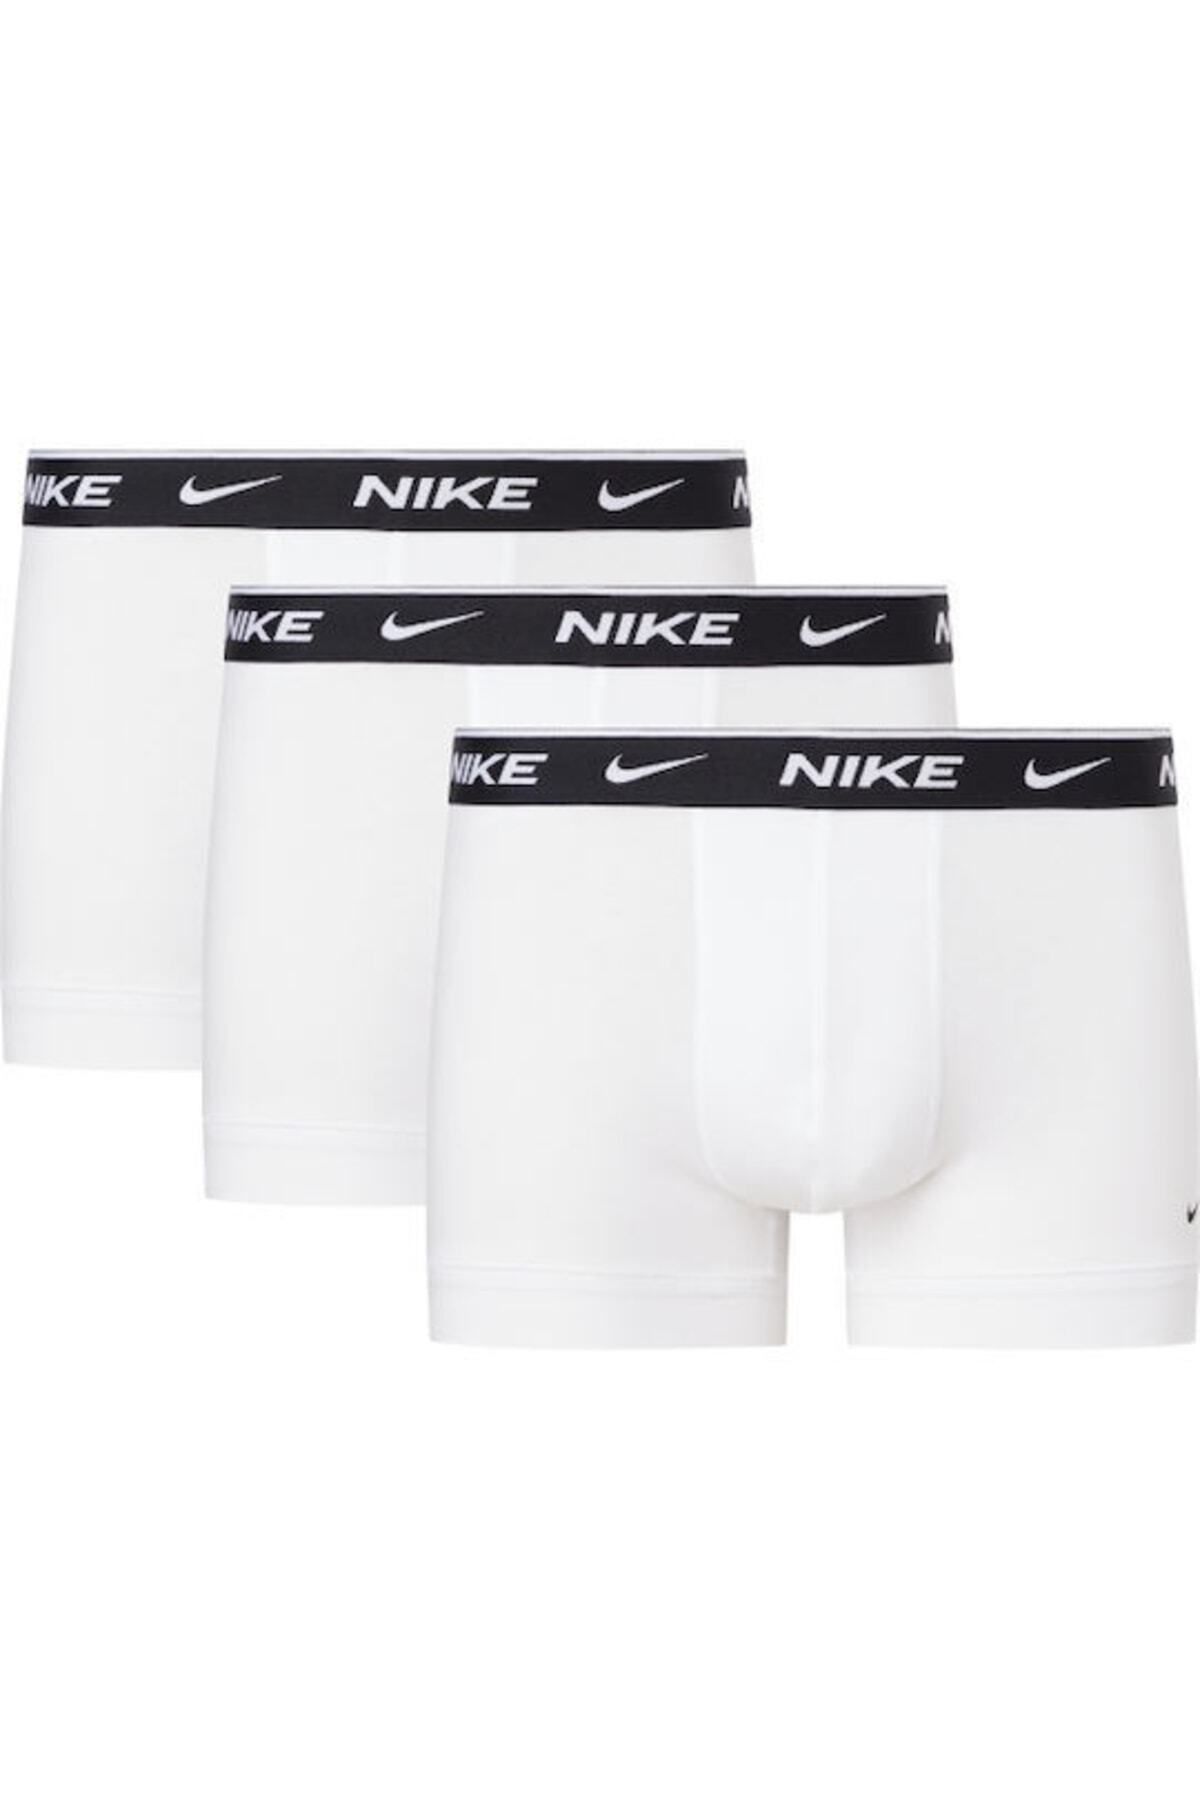 Nike Erkek Nike Marka Logolu Elastik Bantlı Günlük Kullanıma Uygun Beyaz Boxer 0000ke1008-med